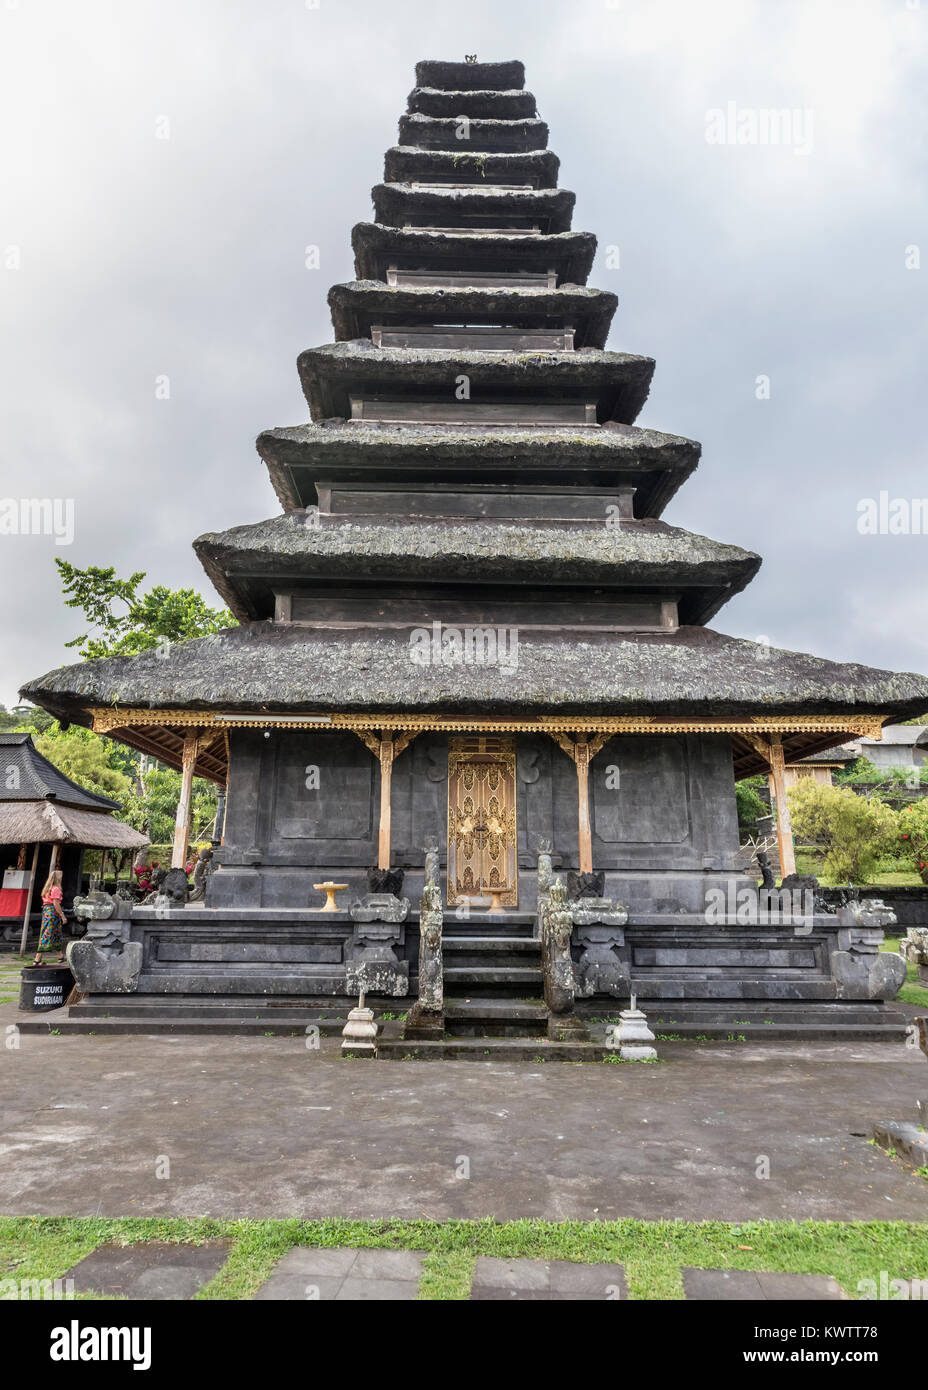 Eleven-tiered meru, upper level, Pura Penataran Agung, Pura Besakih Hindu temple complex, Bali, Indonesia Stock Photo